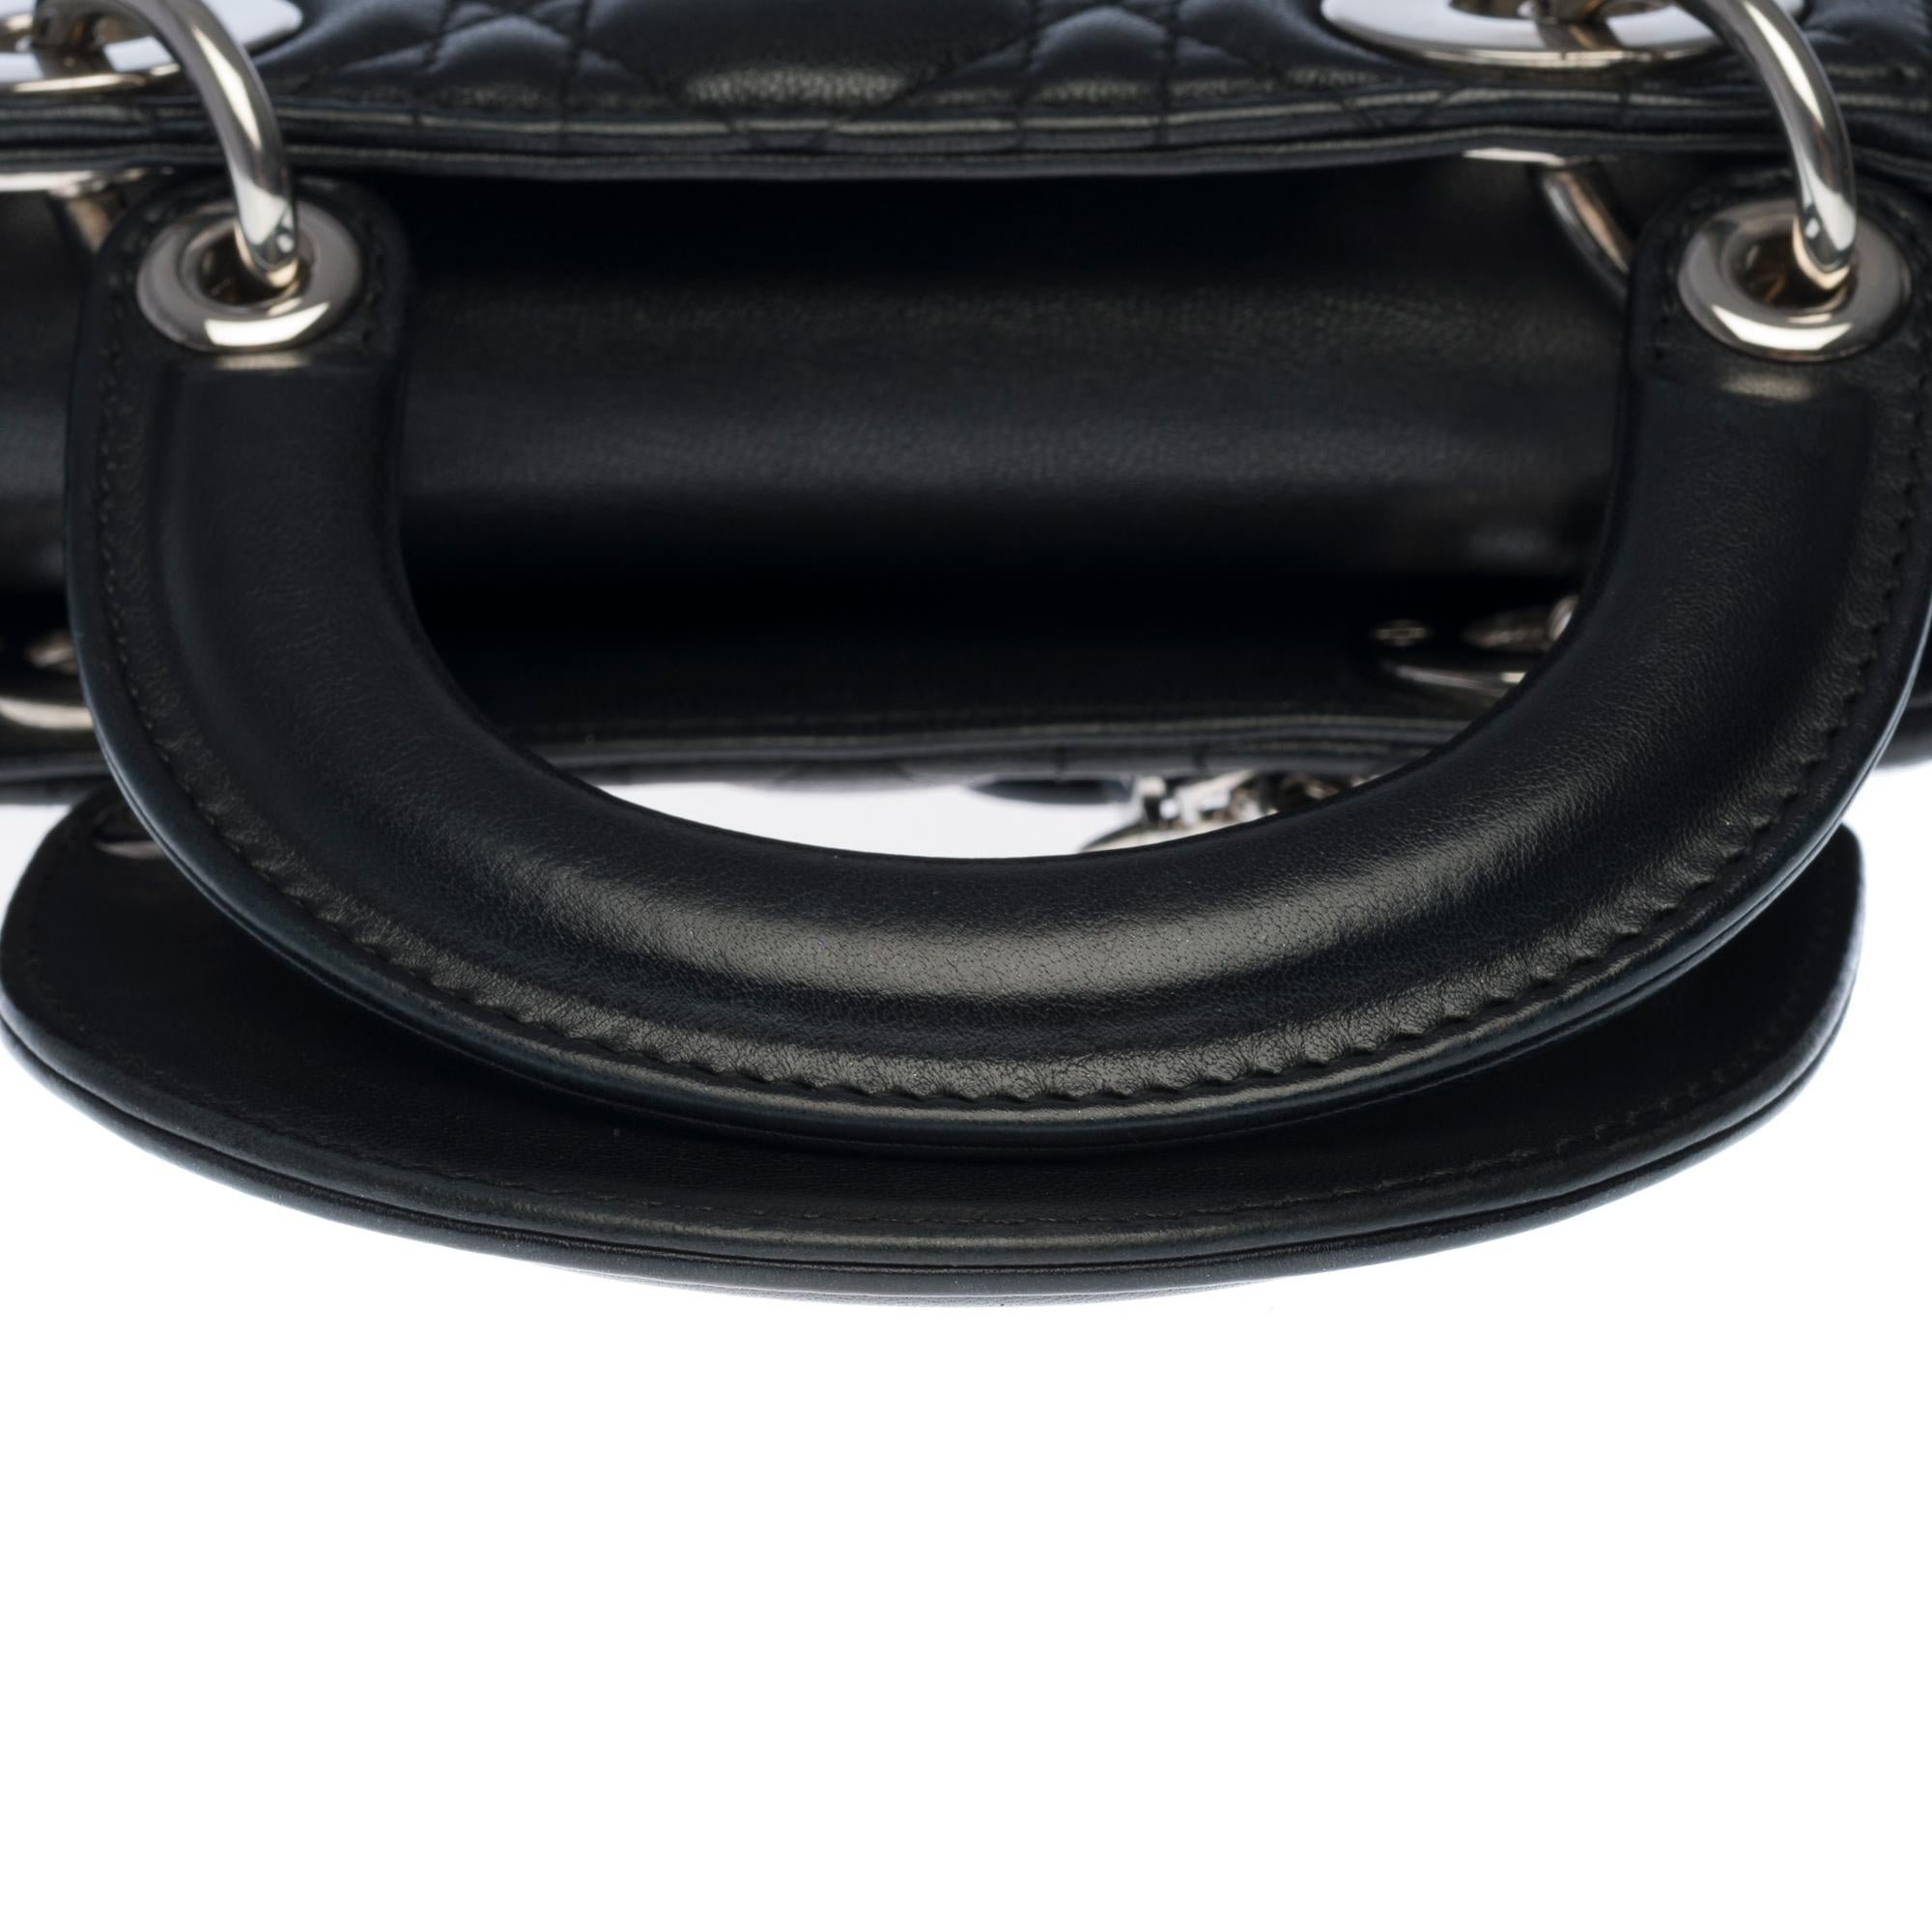 Women's  Christian Dior Lady Dior Mini handbag strap in black cannage leather, SHW